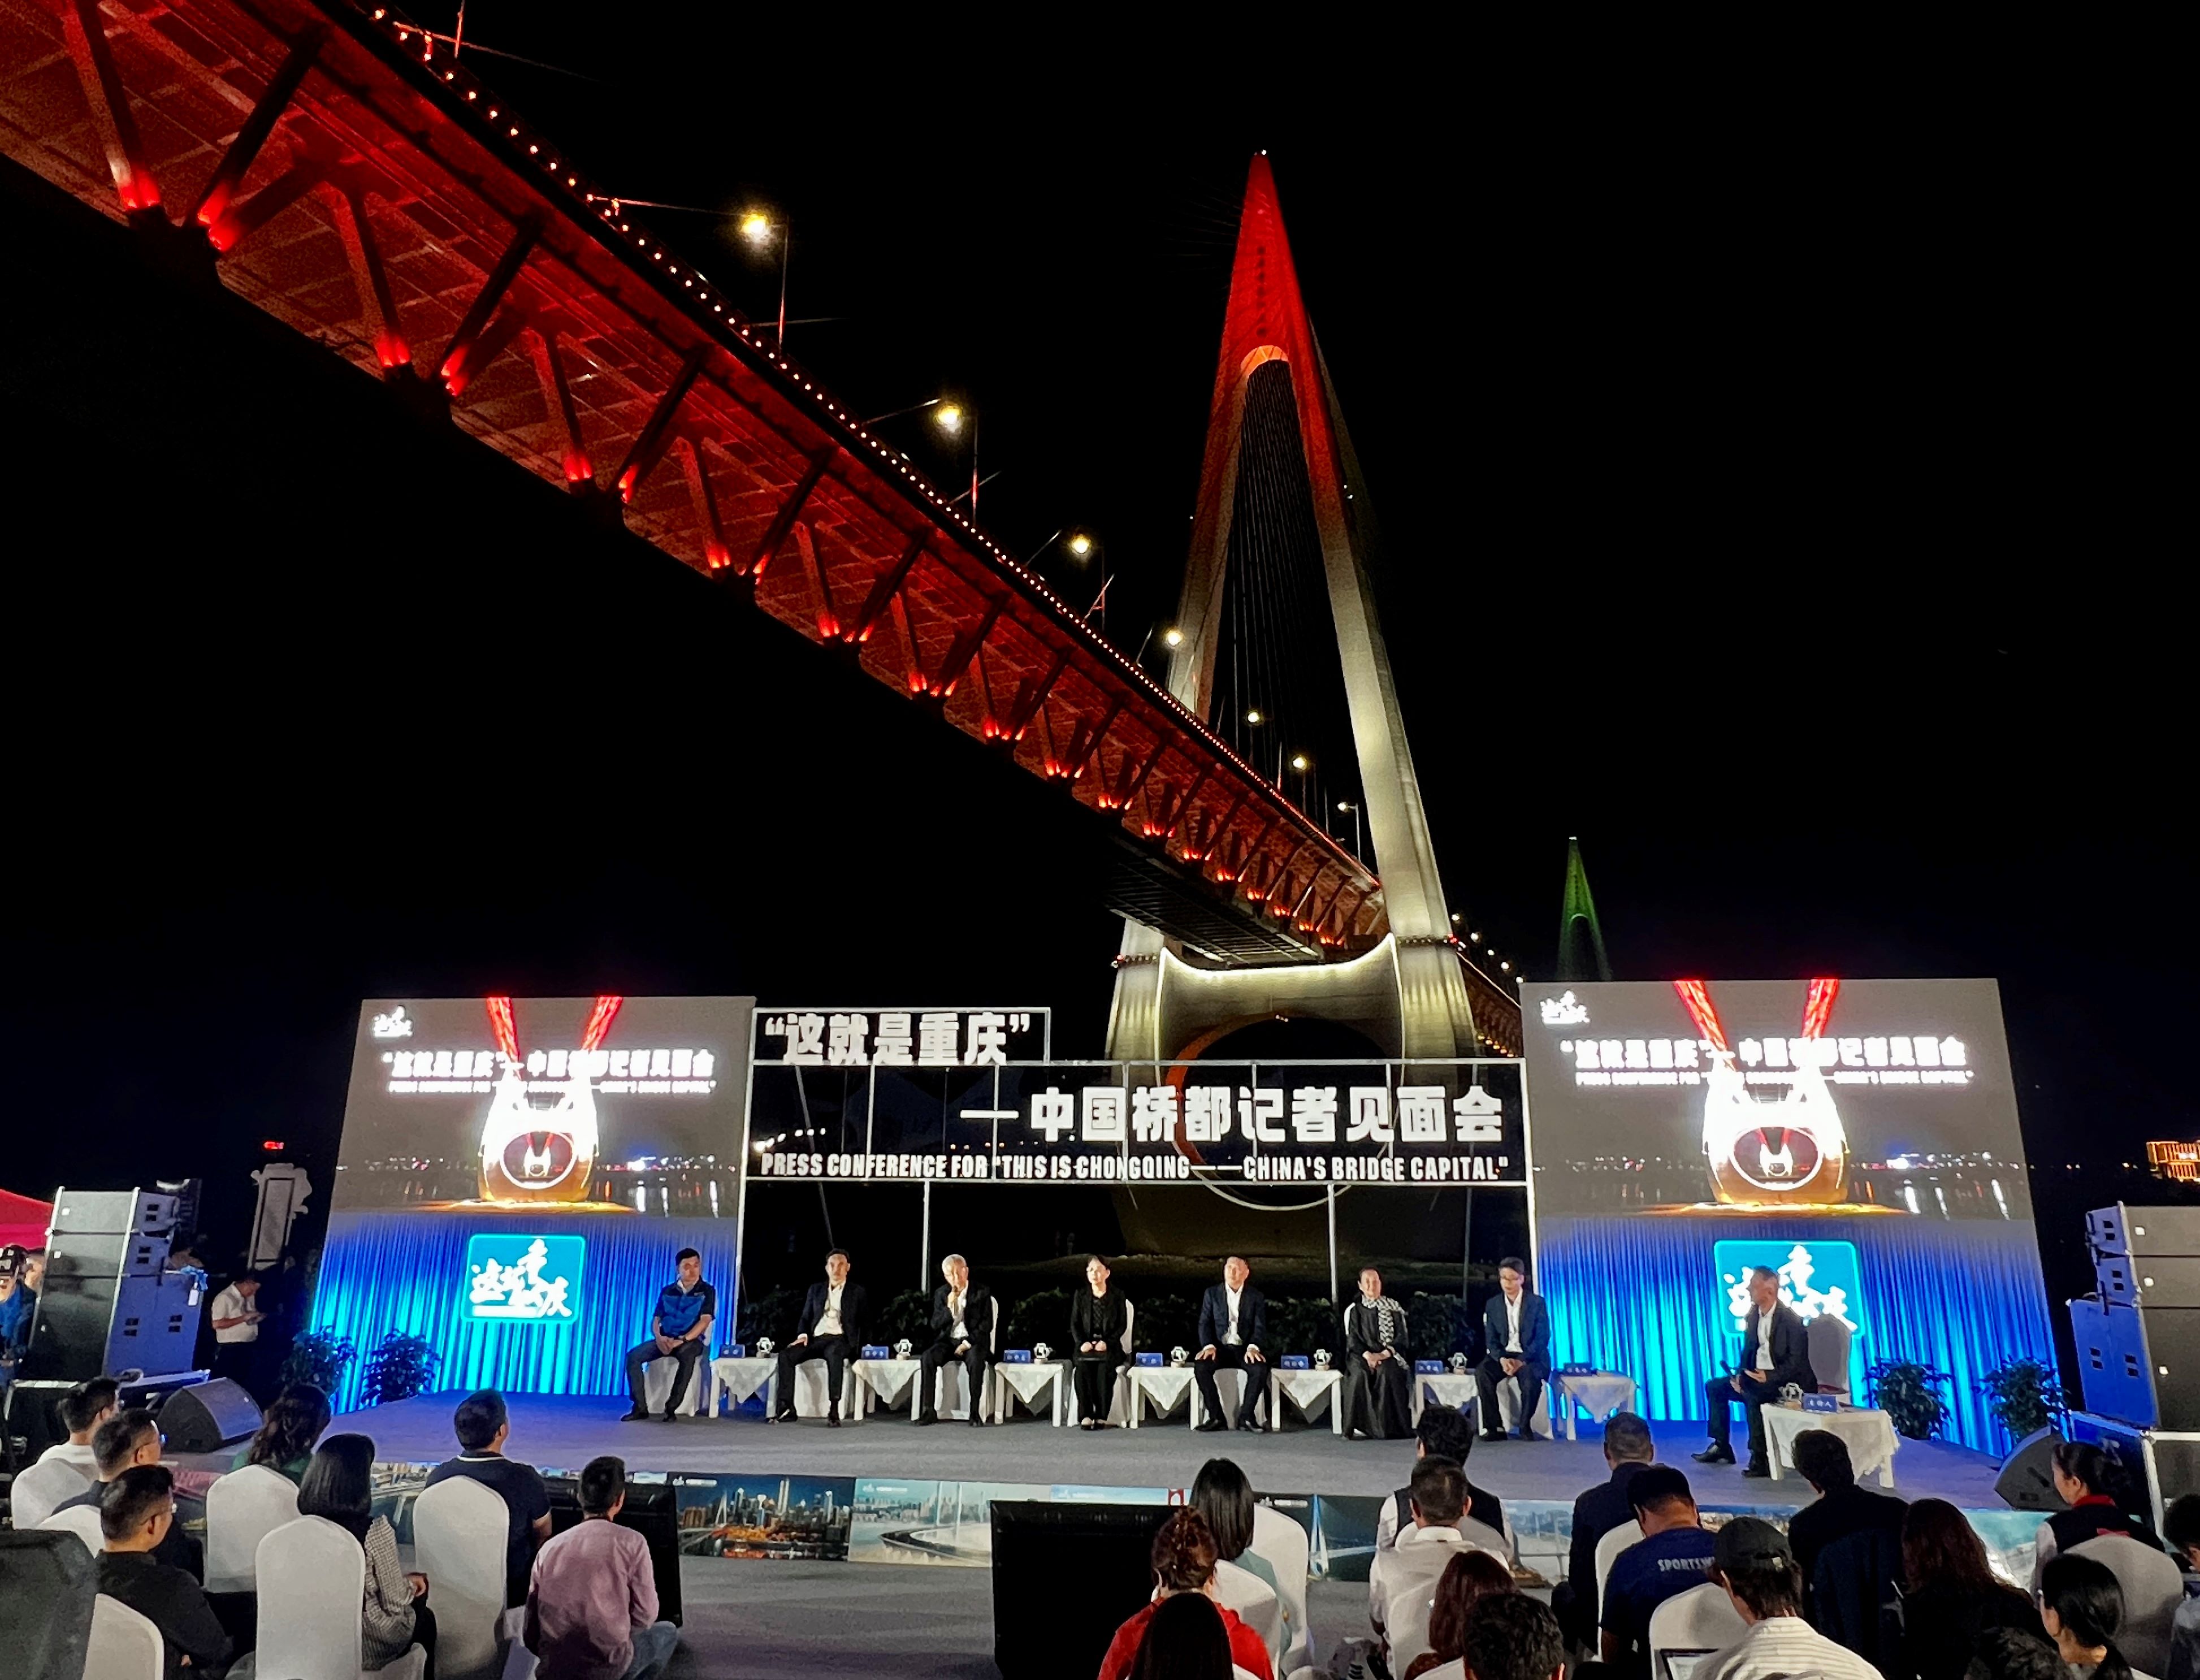 中國橋都重慶 現有橋梁超2萬座